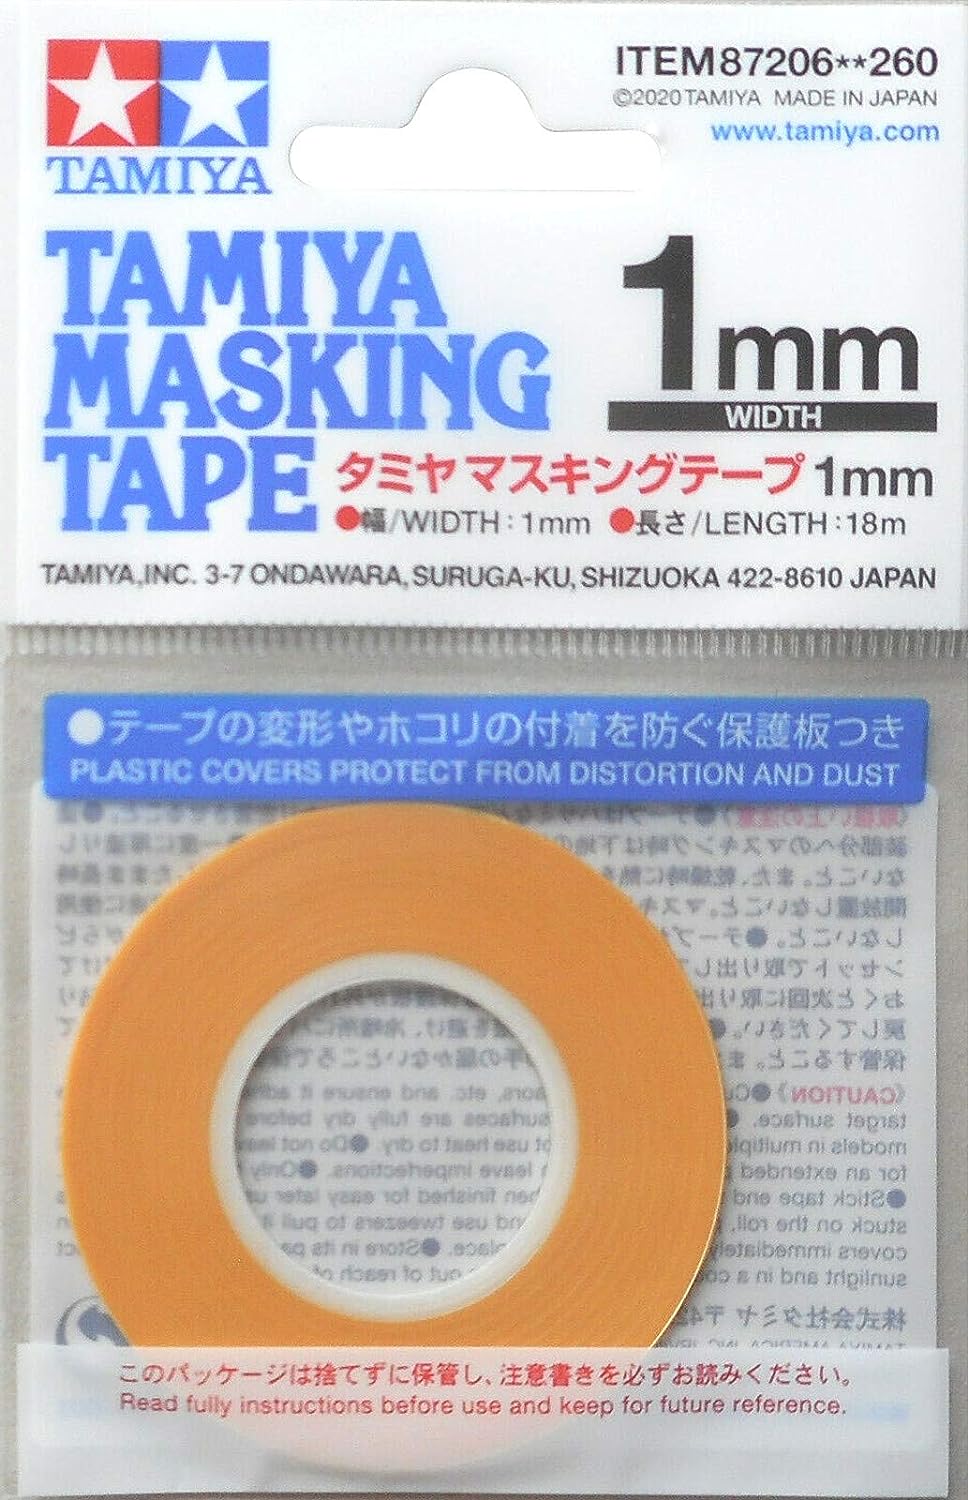 Tamiya: Masking Tape